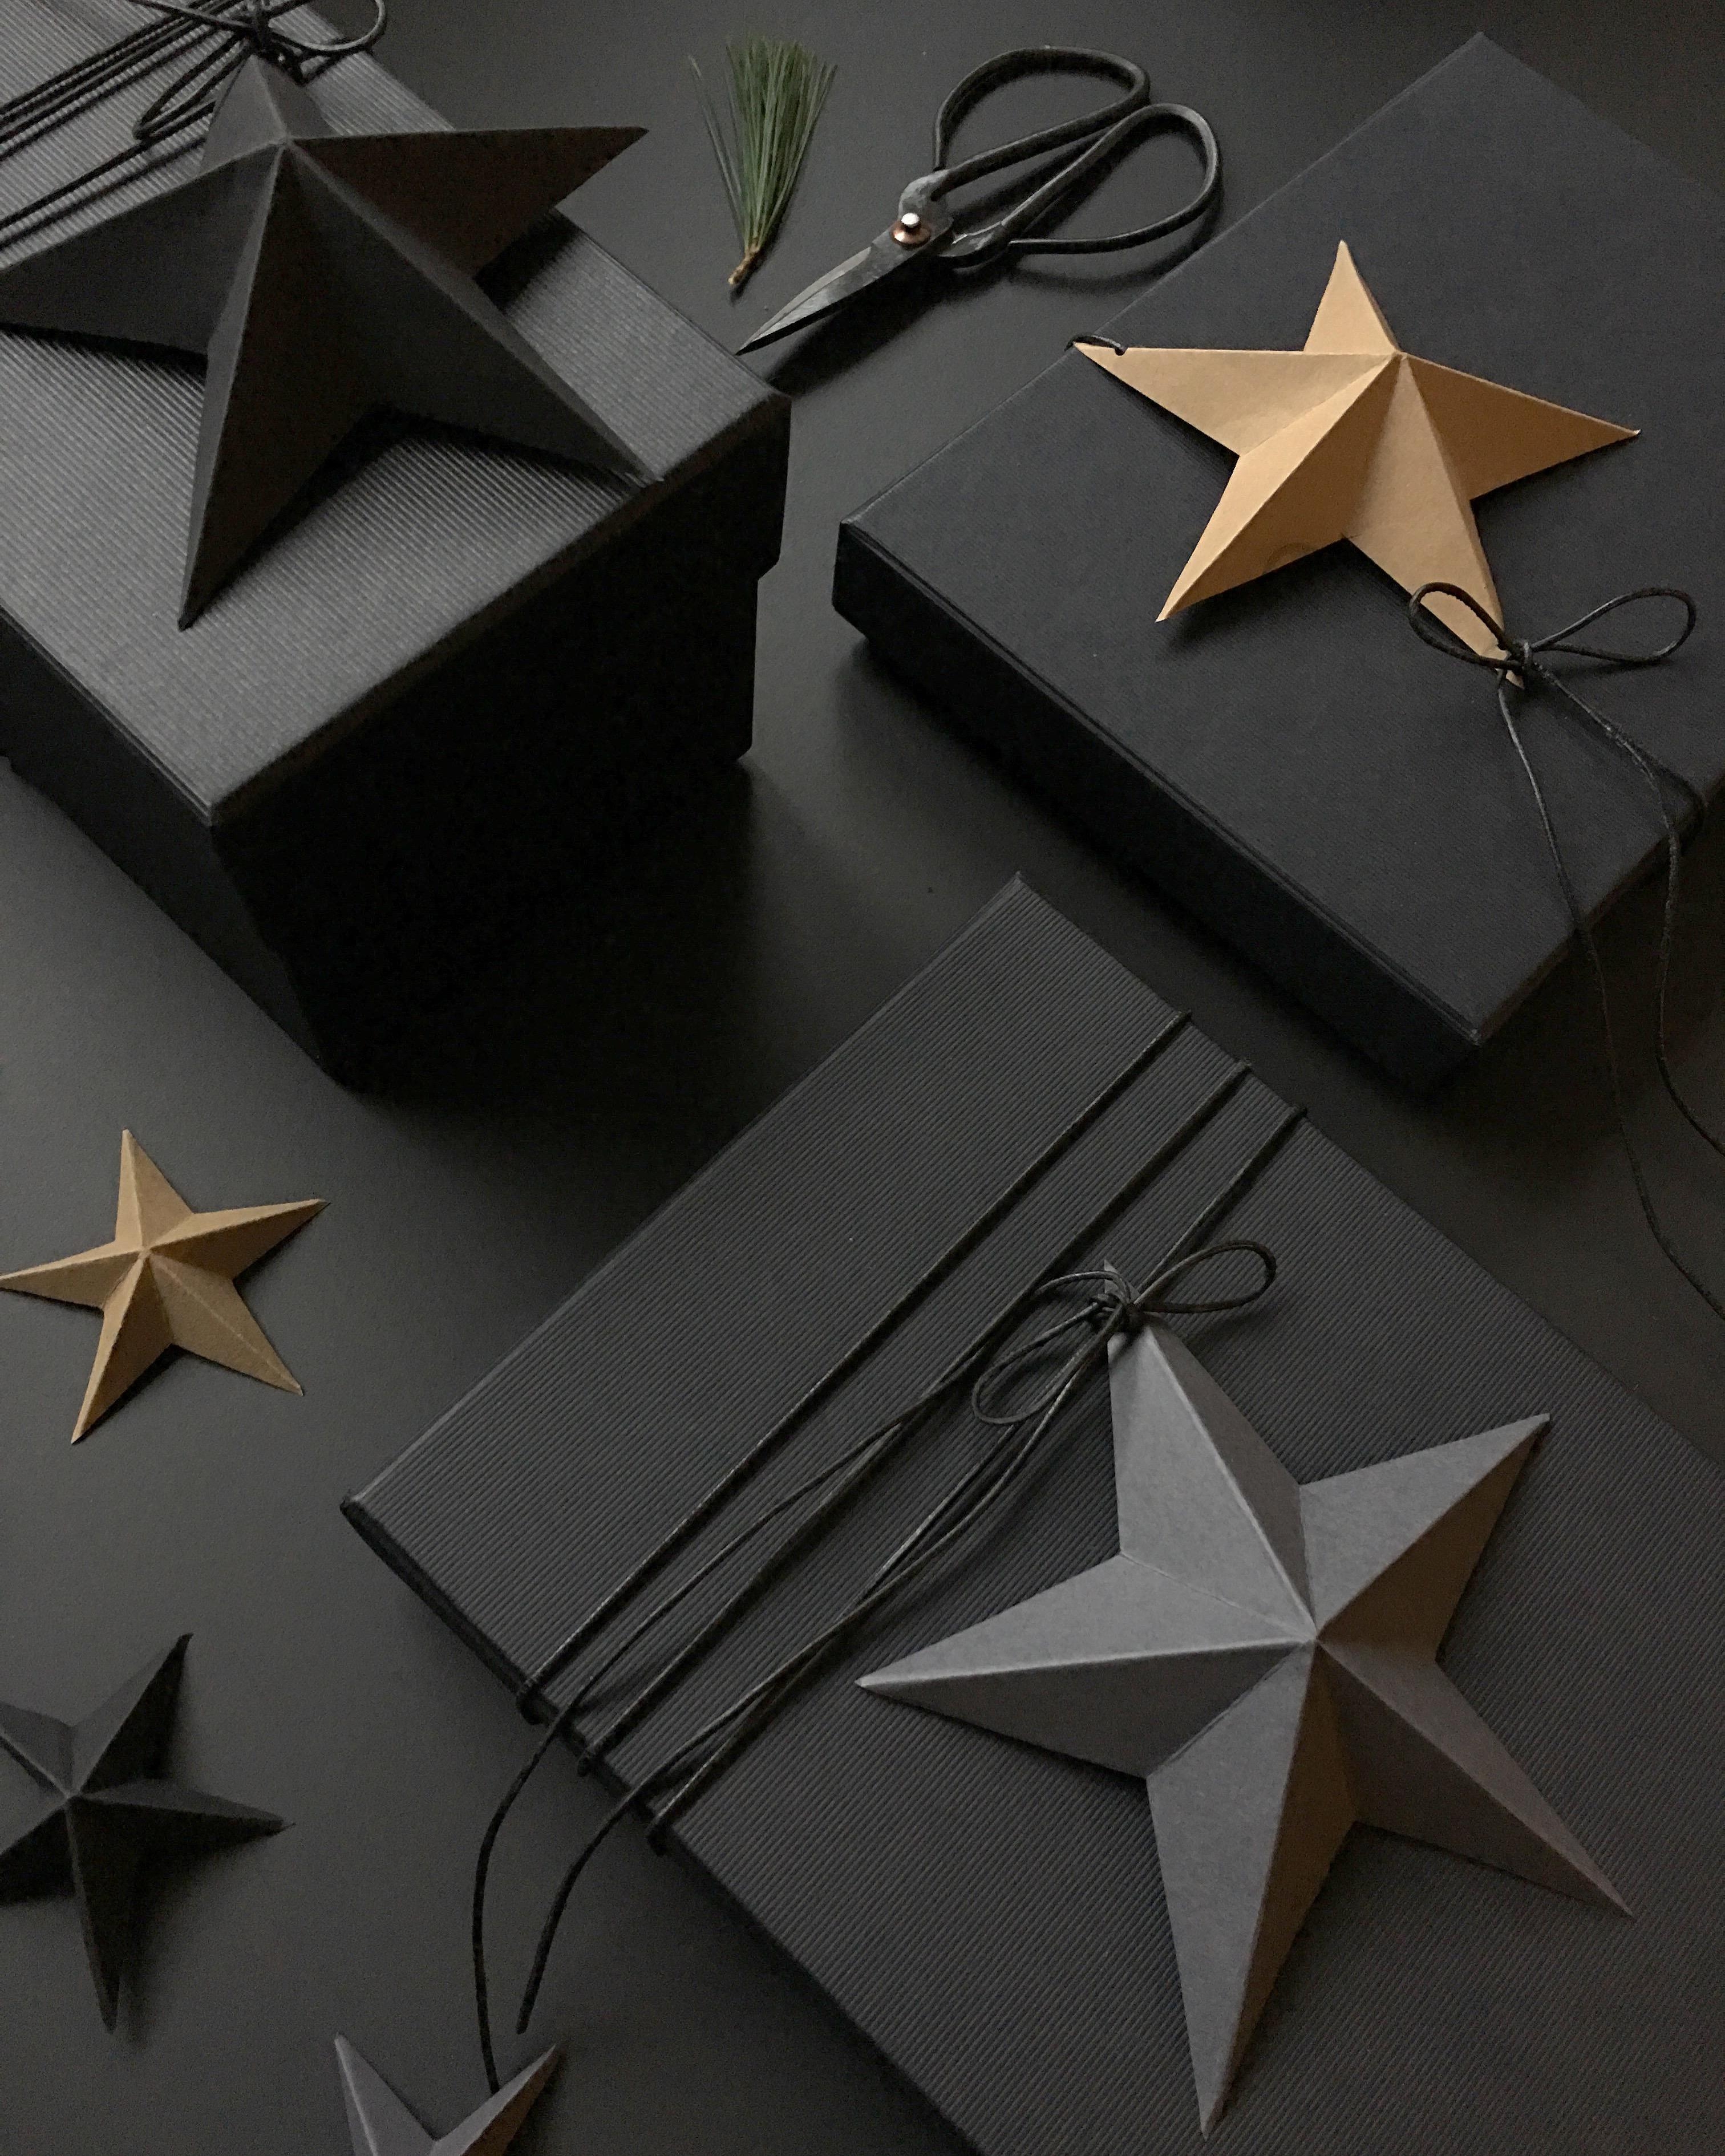 Make a wish 💫
#geschenkverpackung #diy #papierstern #stern #dekoidee  #verpackungsidee #weihnachten #basteln #black 